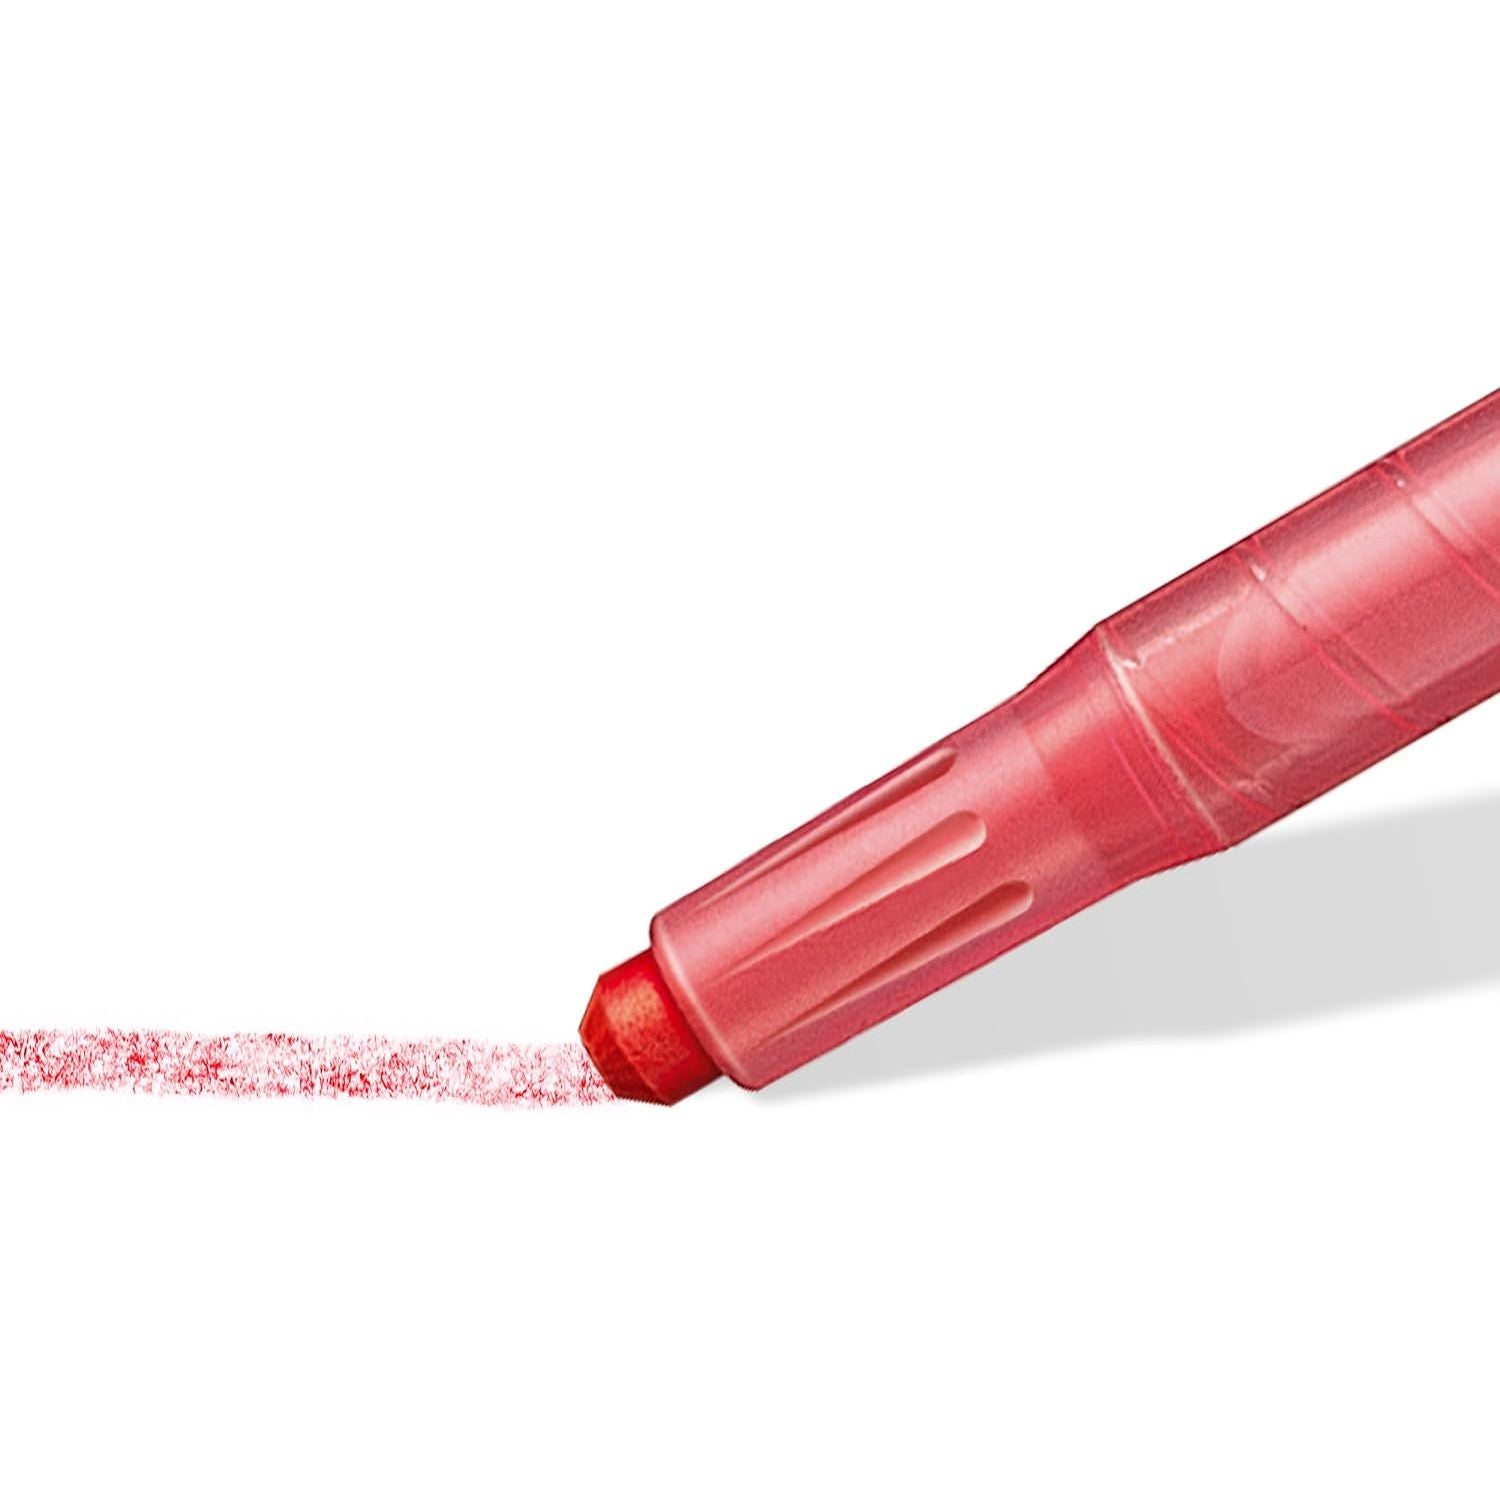 أقلام تلوين شمع ستيدلر نوريس 221 nwp12 - عبوة من 12 قطعة